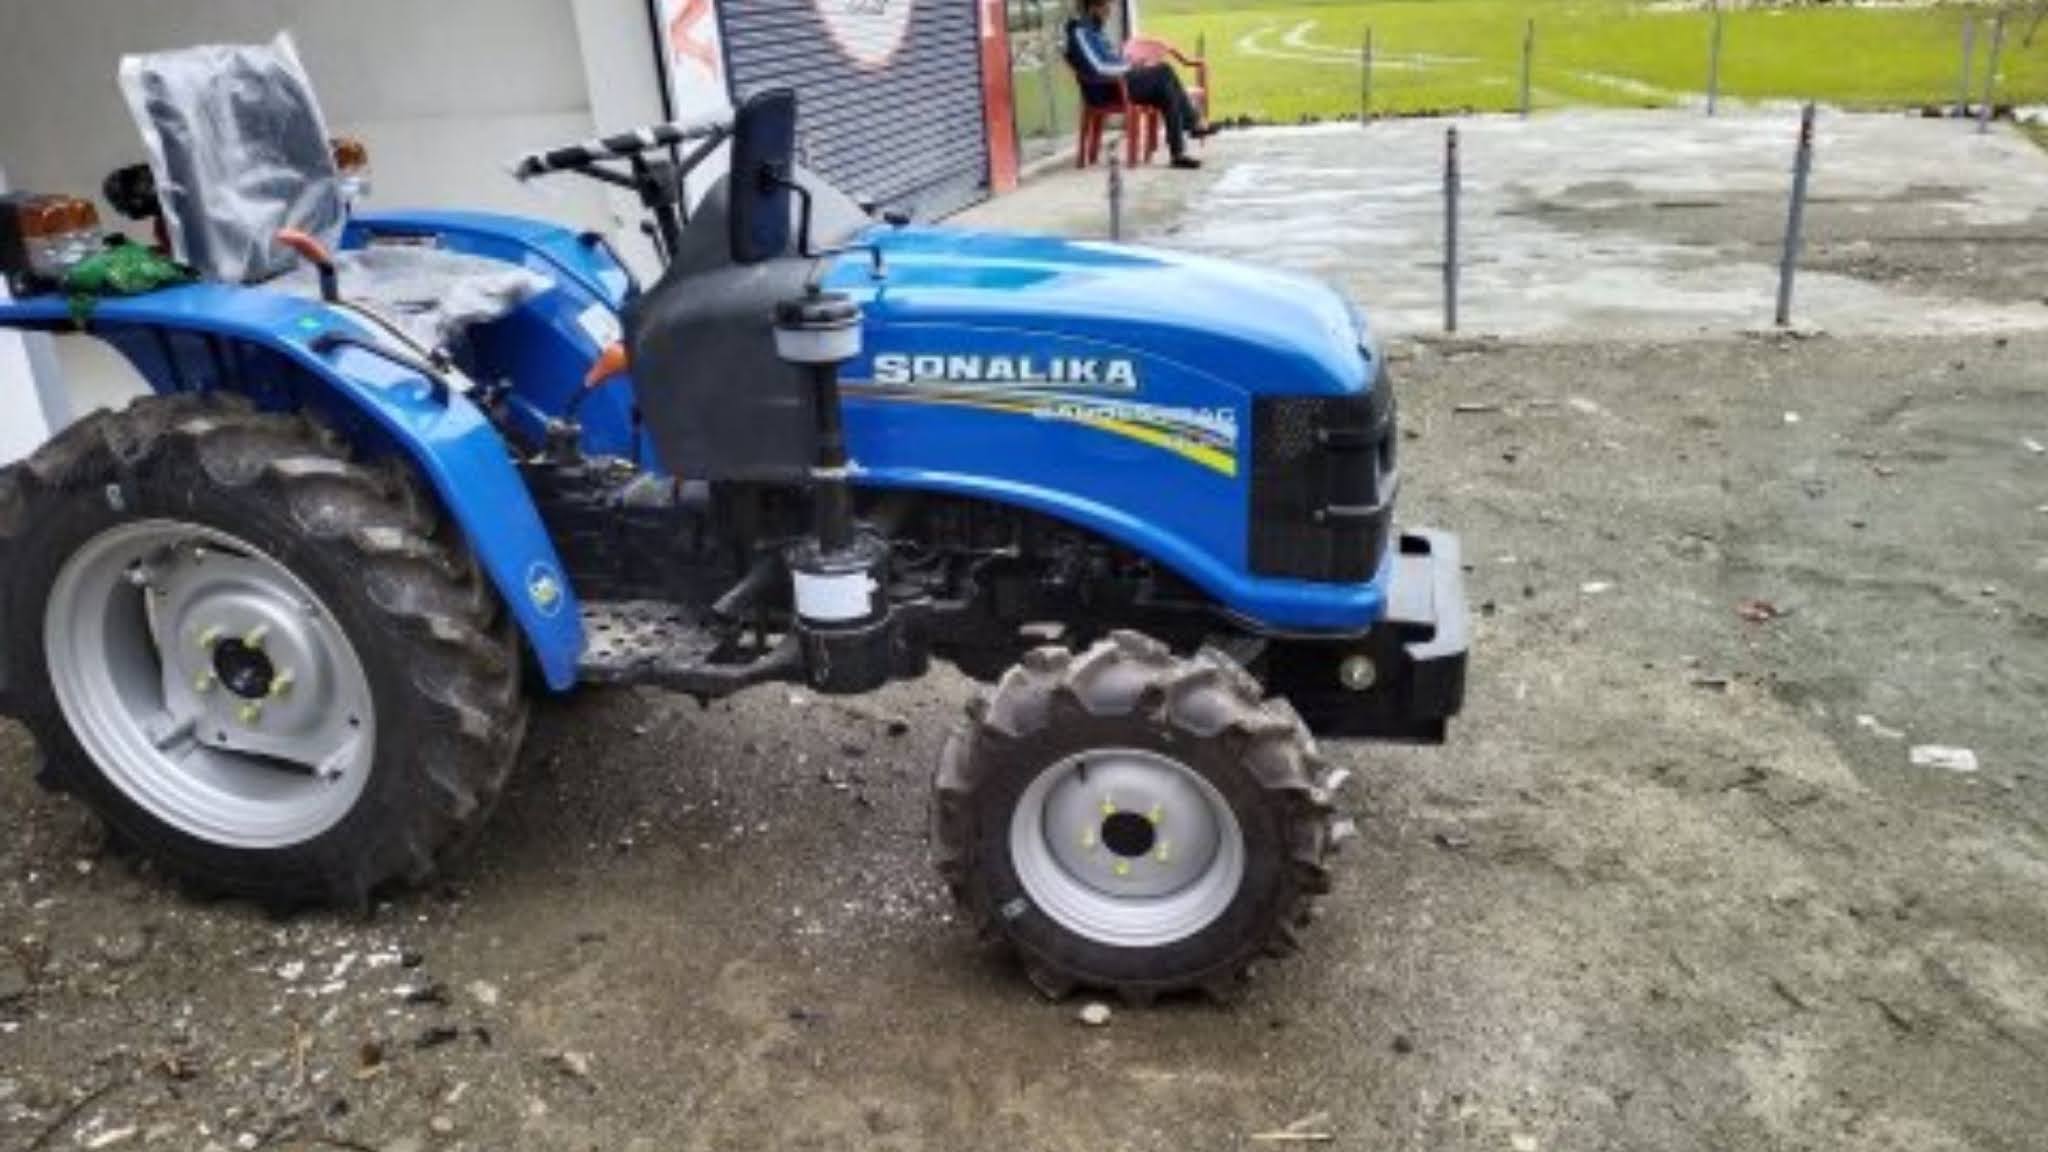 sonalika gt 20 tractor : सोनालिका GT 20 ट्रैक्टर की कीमत और फीचर्स